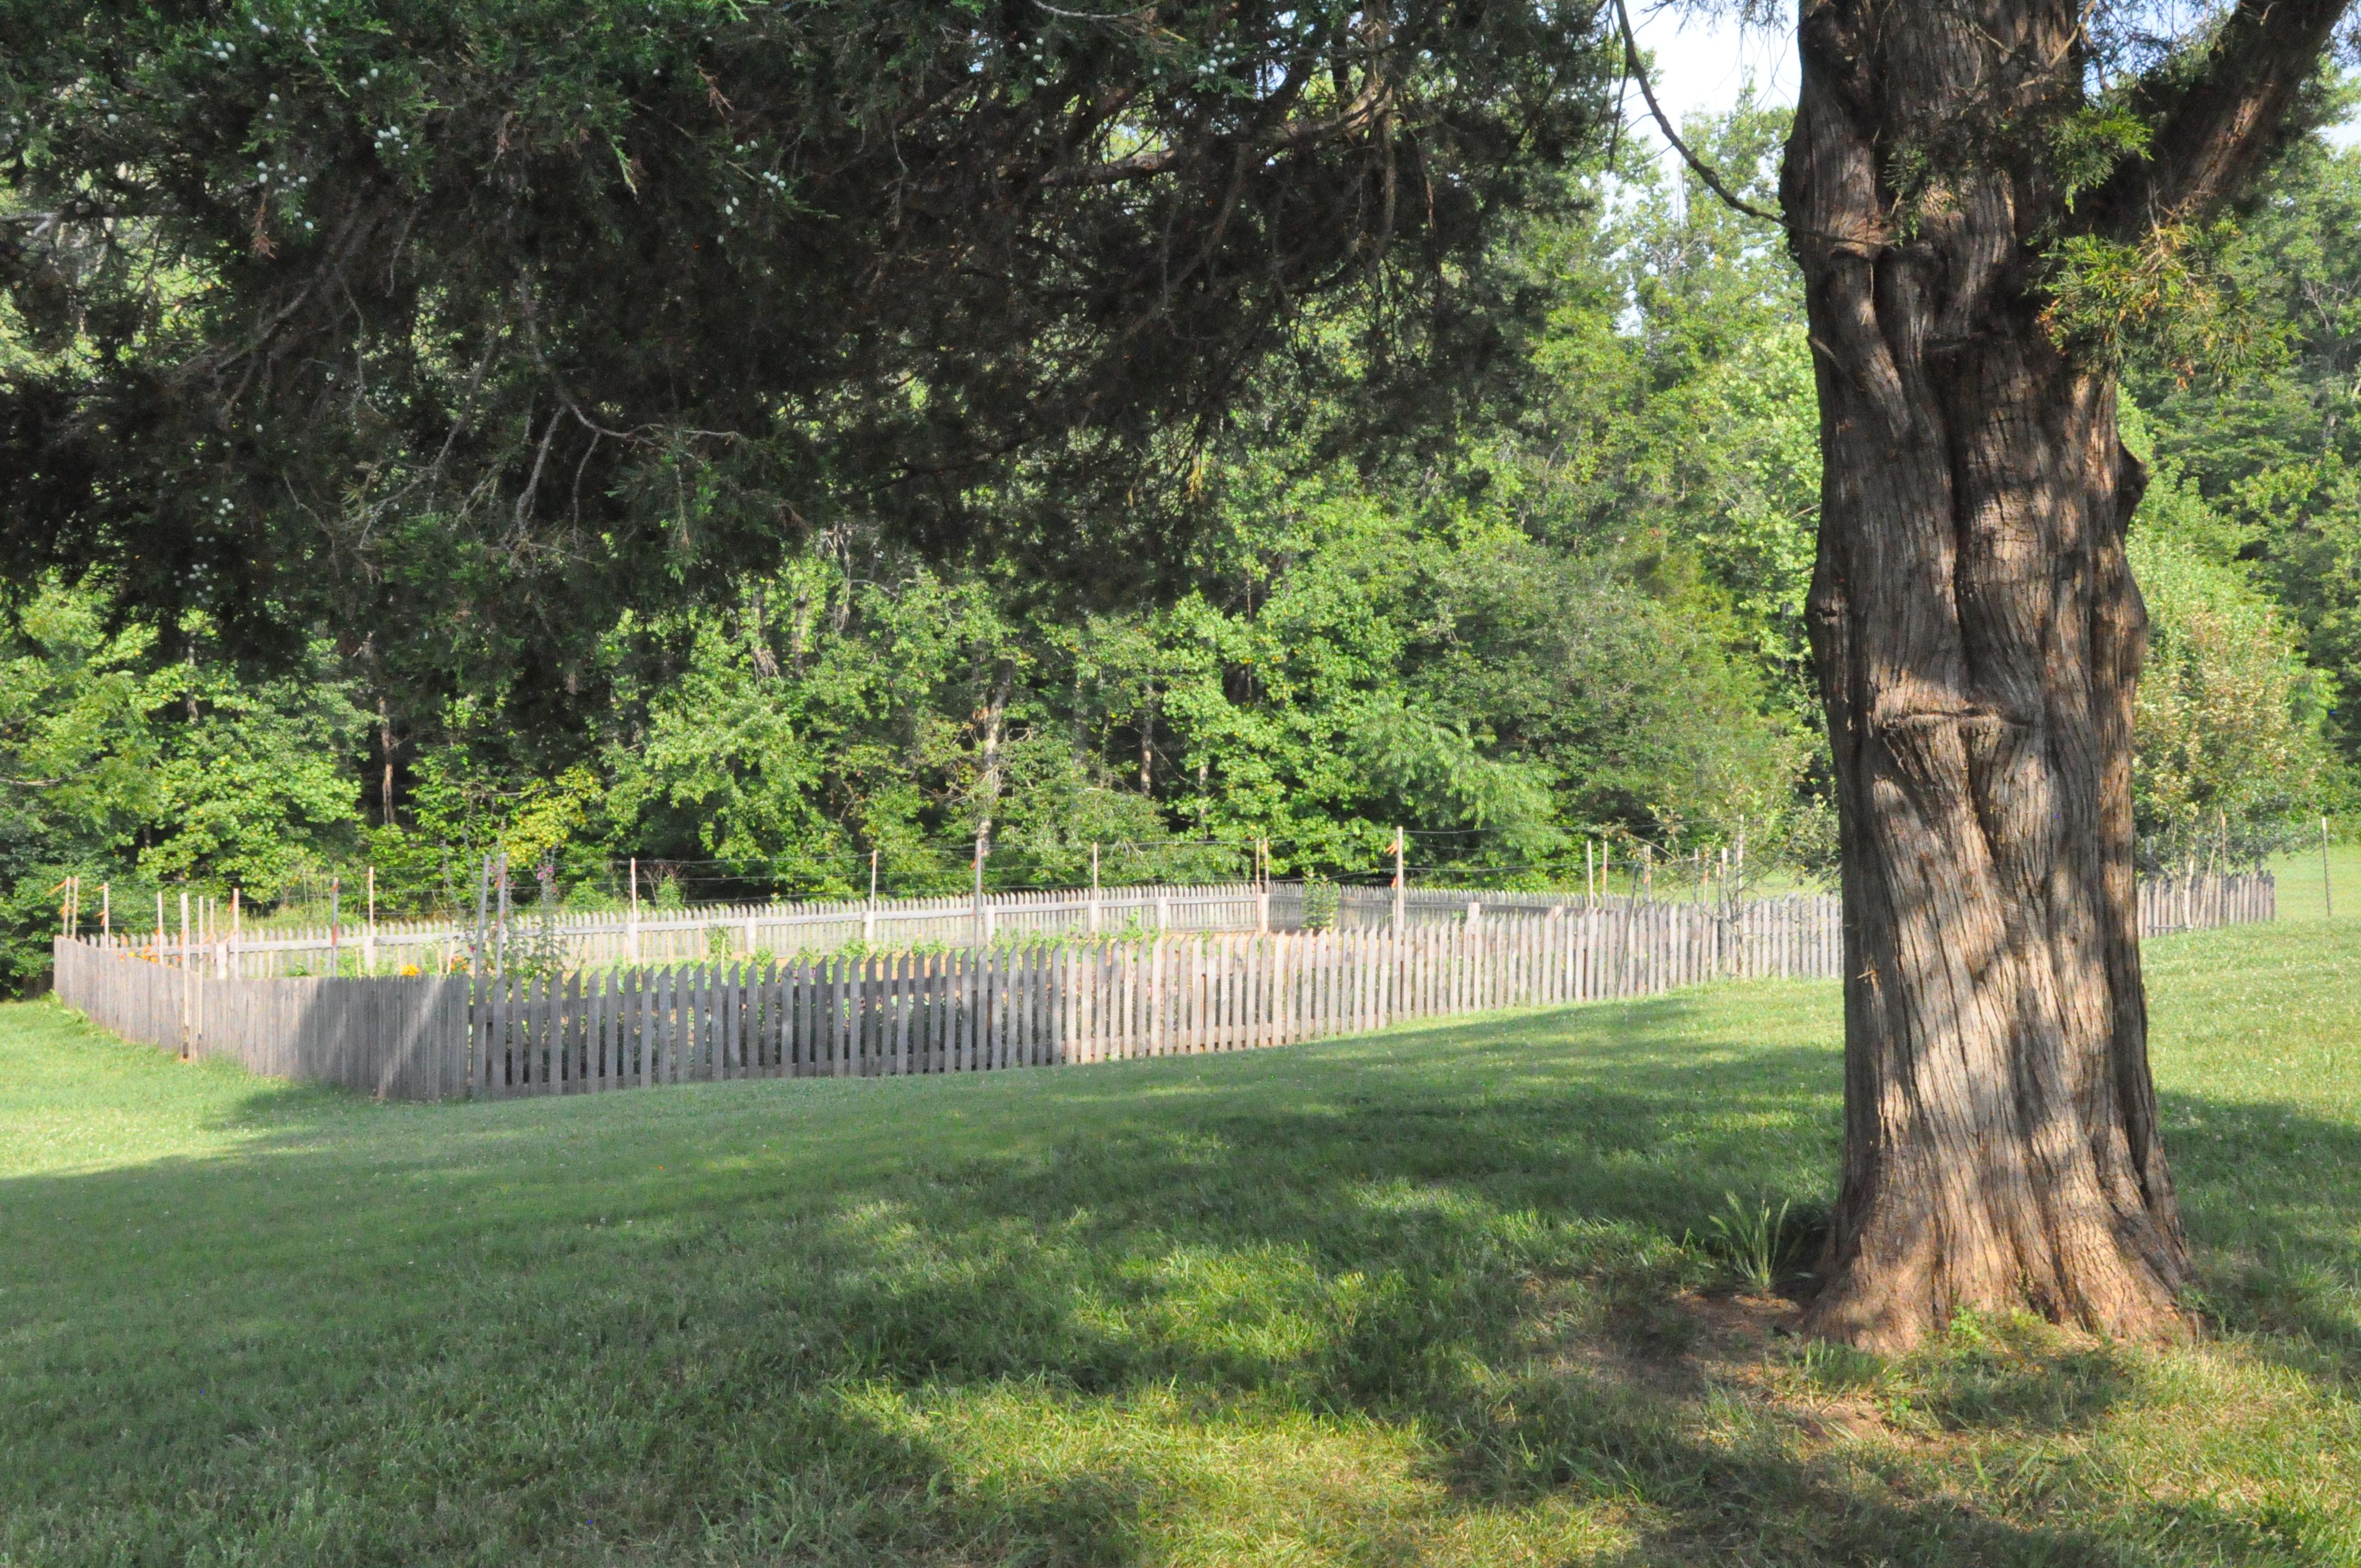 Fence around heirloom garden with cedar tree in foreground